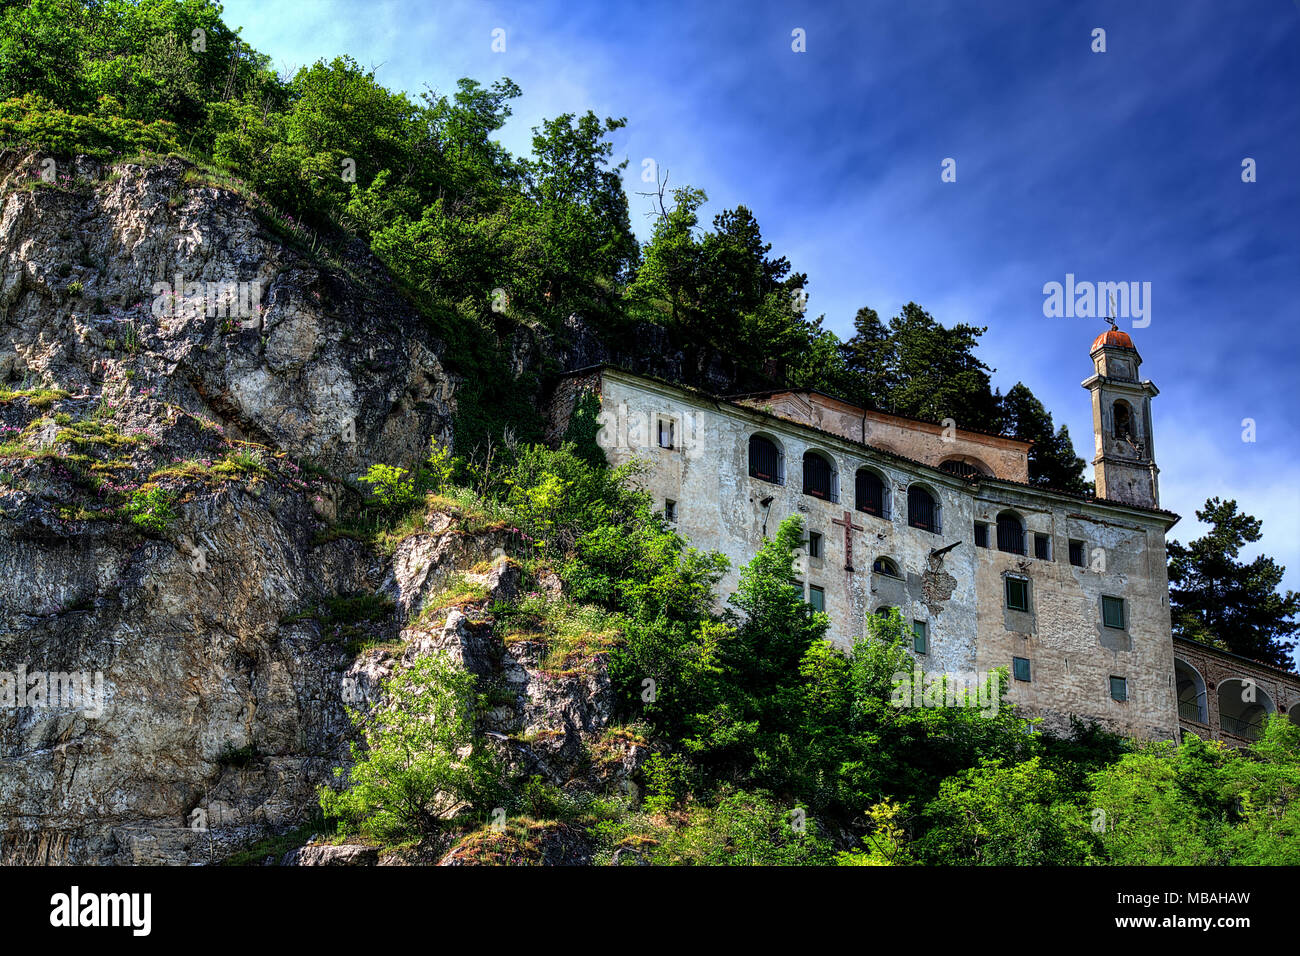 Il santuario di Santa Lucia, parzialmente in una grotta rocciosa, a Villanova Mondovì, in Piemonte, Italia. Foto Stock